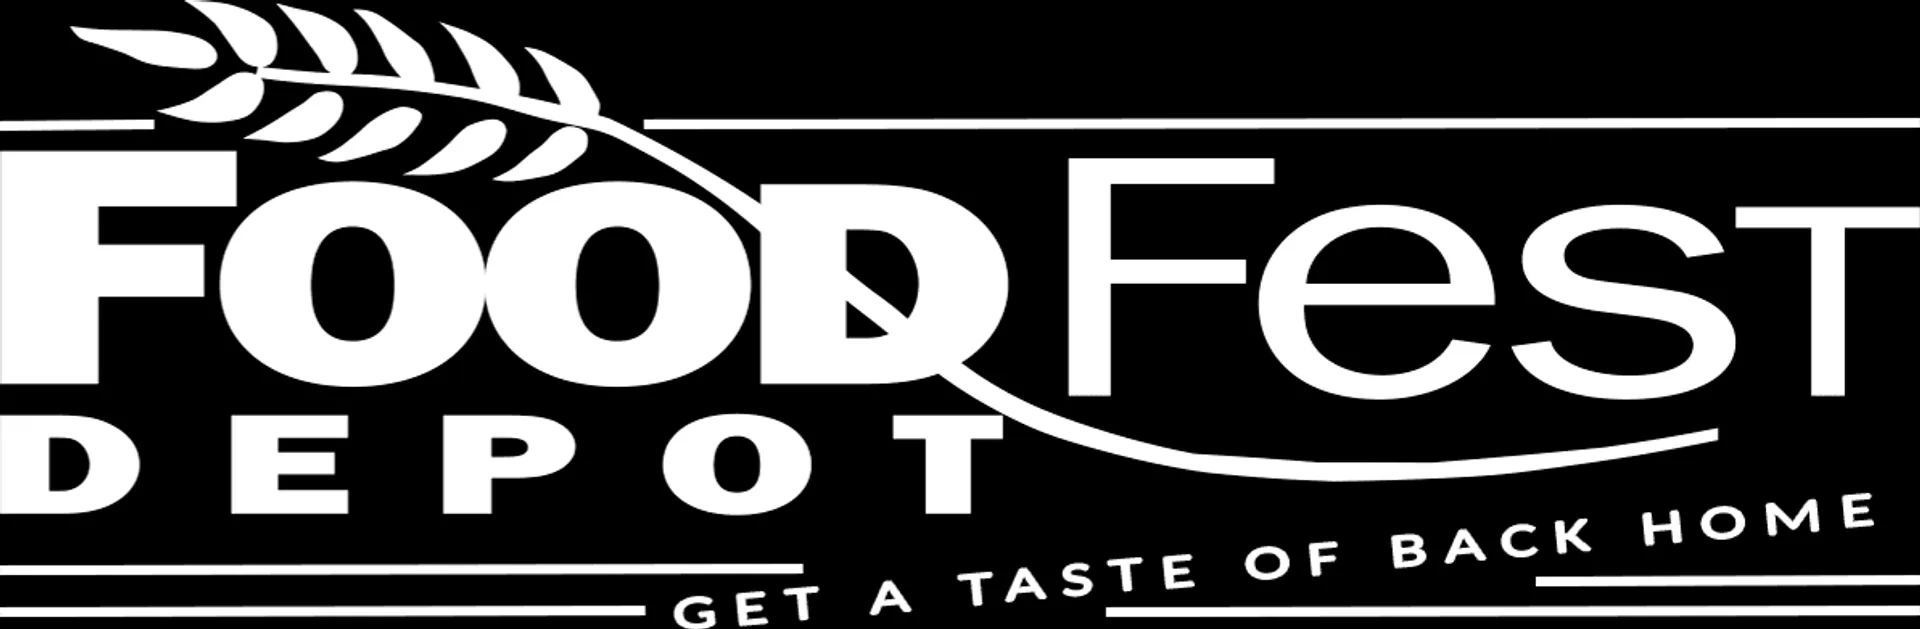 FOOD FEST DEPOT logo